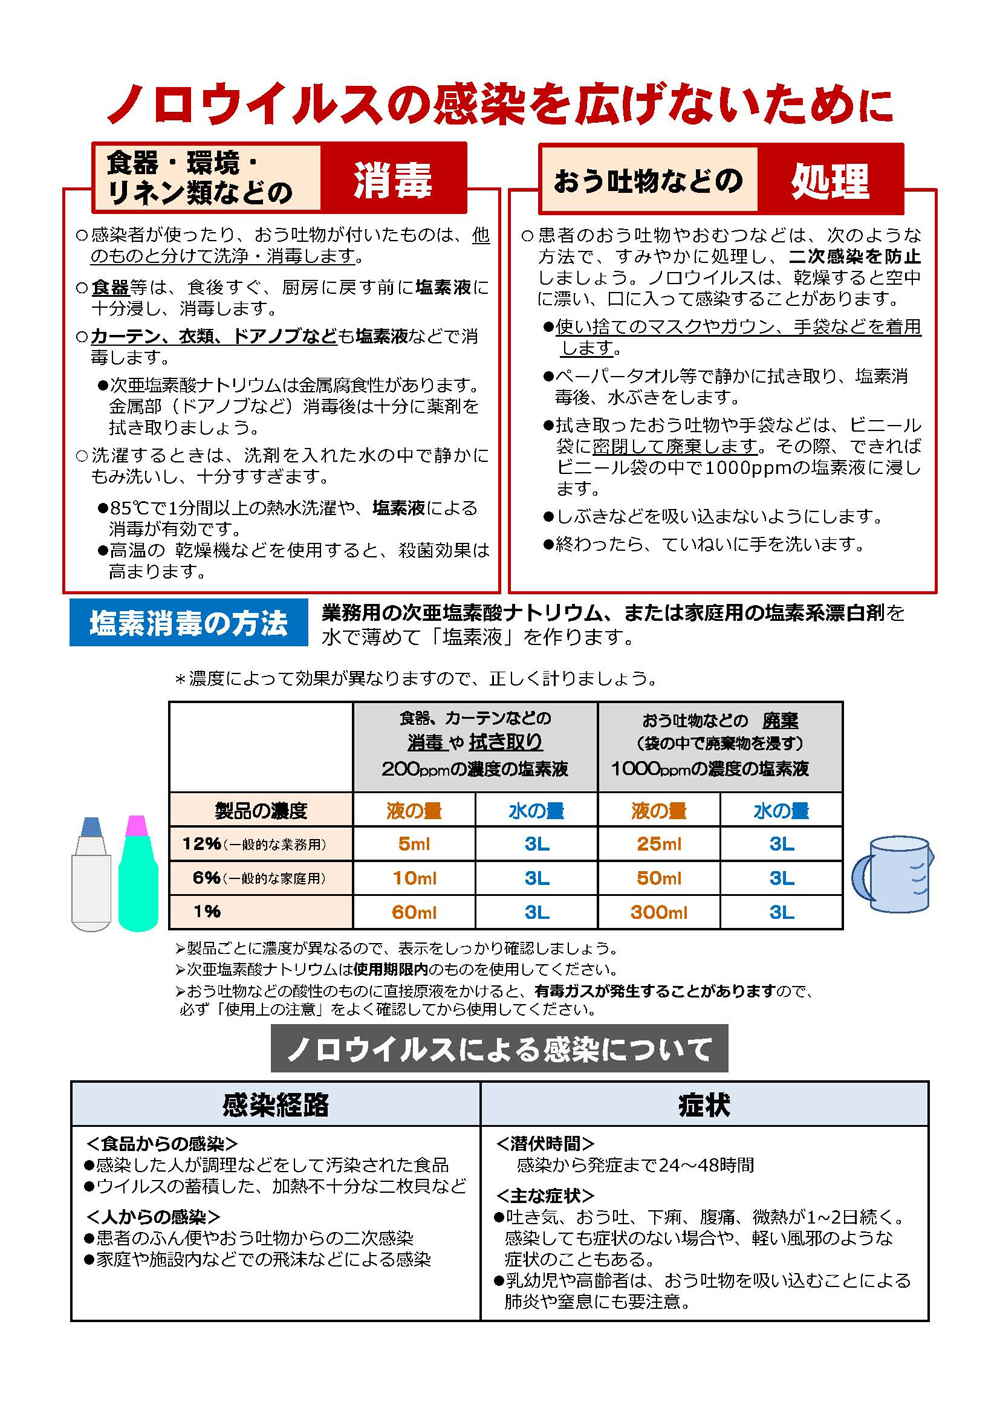 http://www.nakagawa-hp.com/staffblog/%E3%83%8E%E3%83%AD_%E3%83%9A%E3%83%BC%E3%82%B8_2.jpg